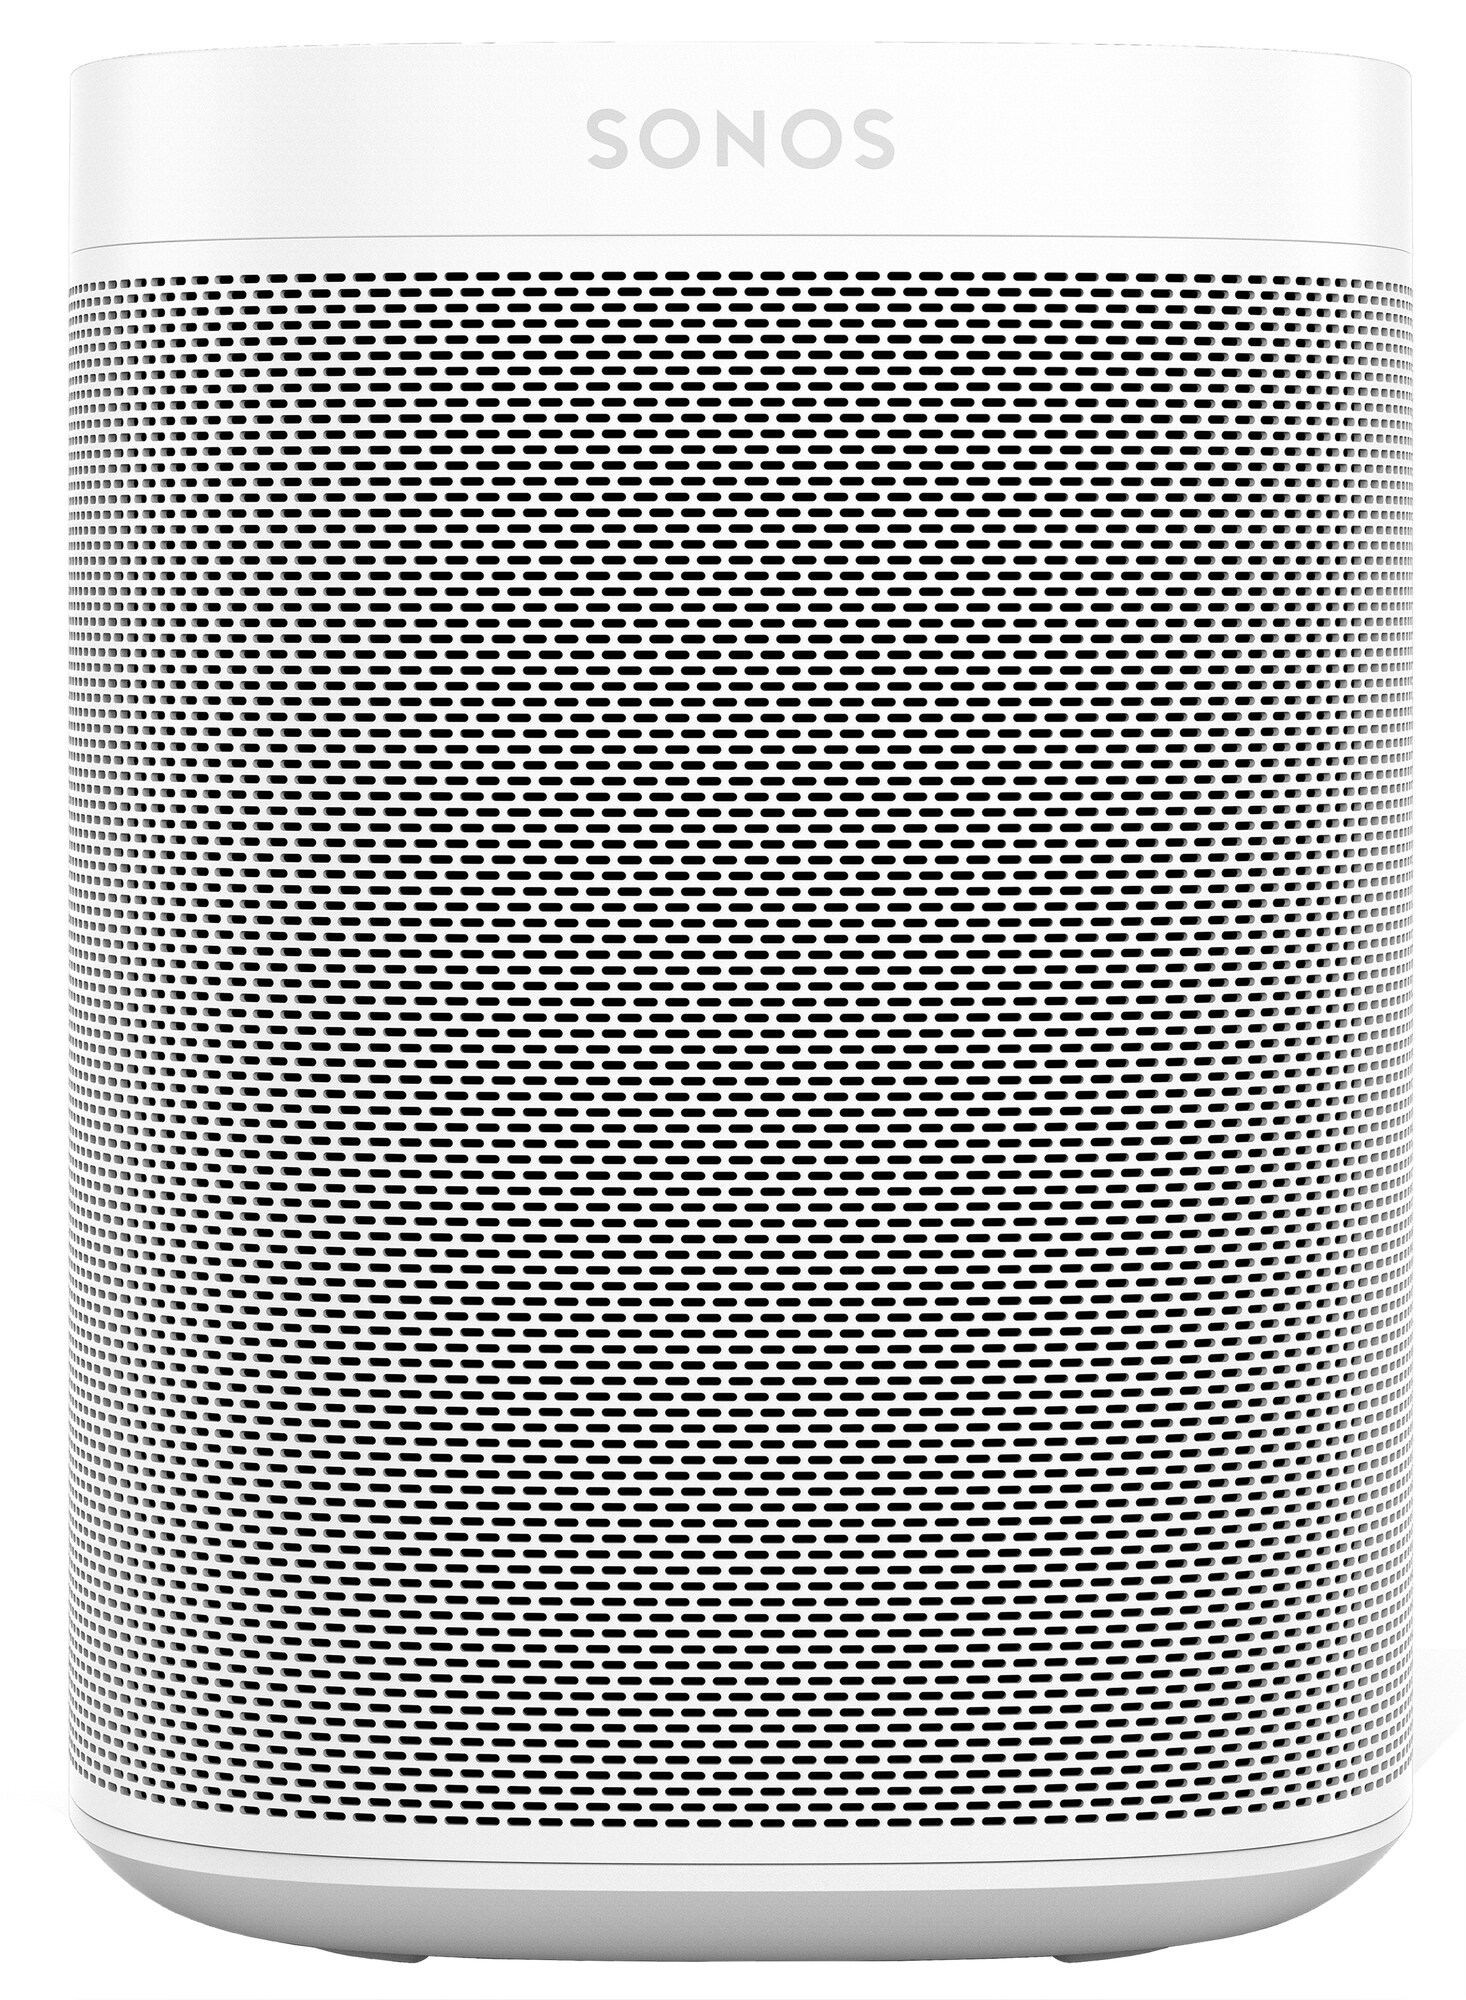 Sonos One Gen 2 høyttaler (hvit) - Alle smartprodukter - Elkjøp